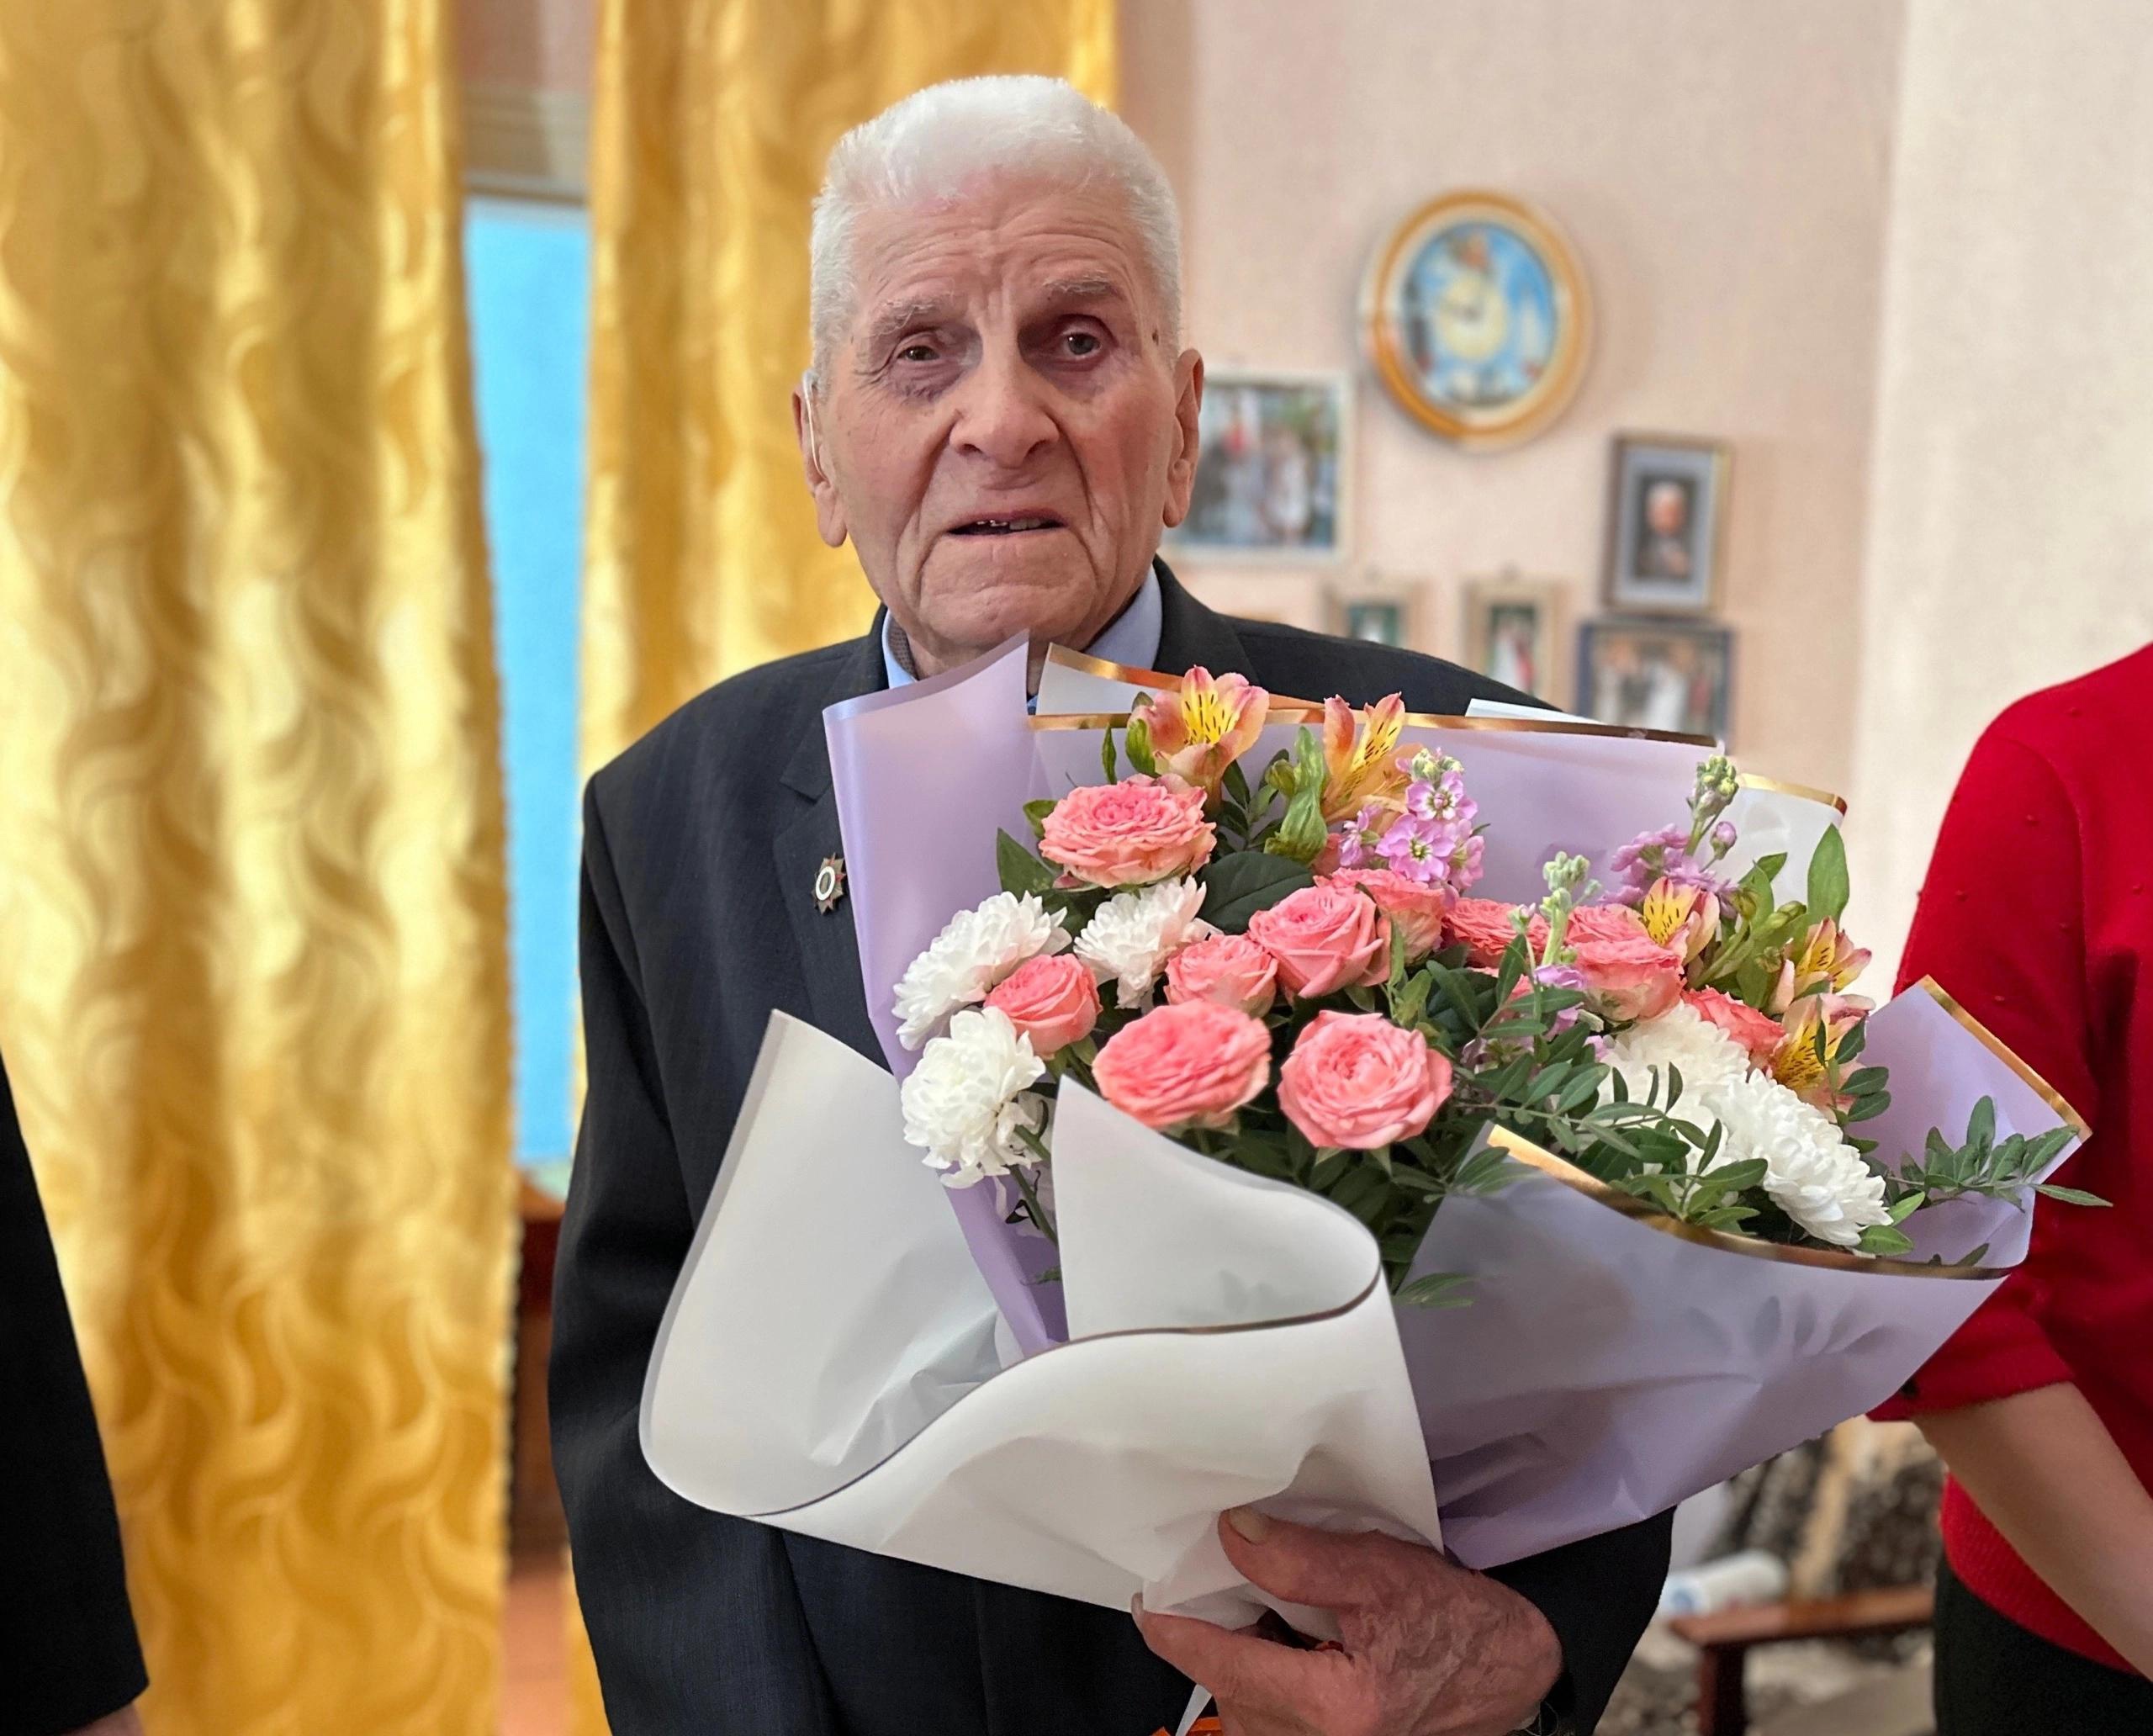 Глава администрации Ракитянского района поздравил ветеранов Великой Отечественной войны с Днём Победы.